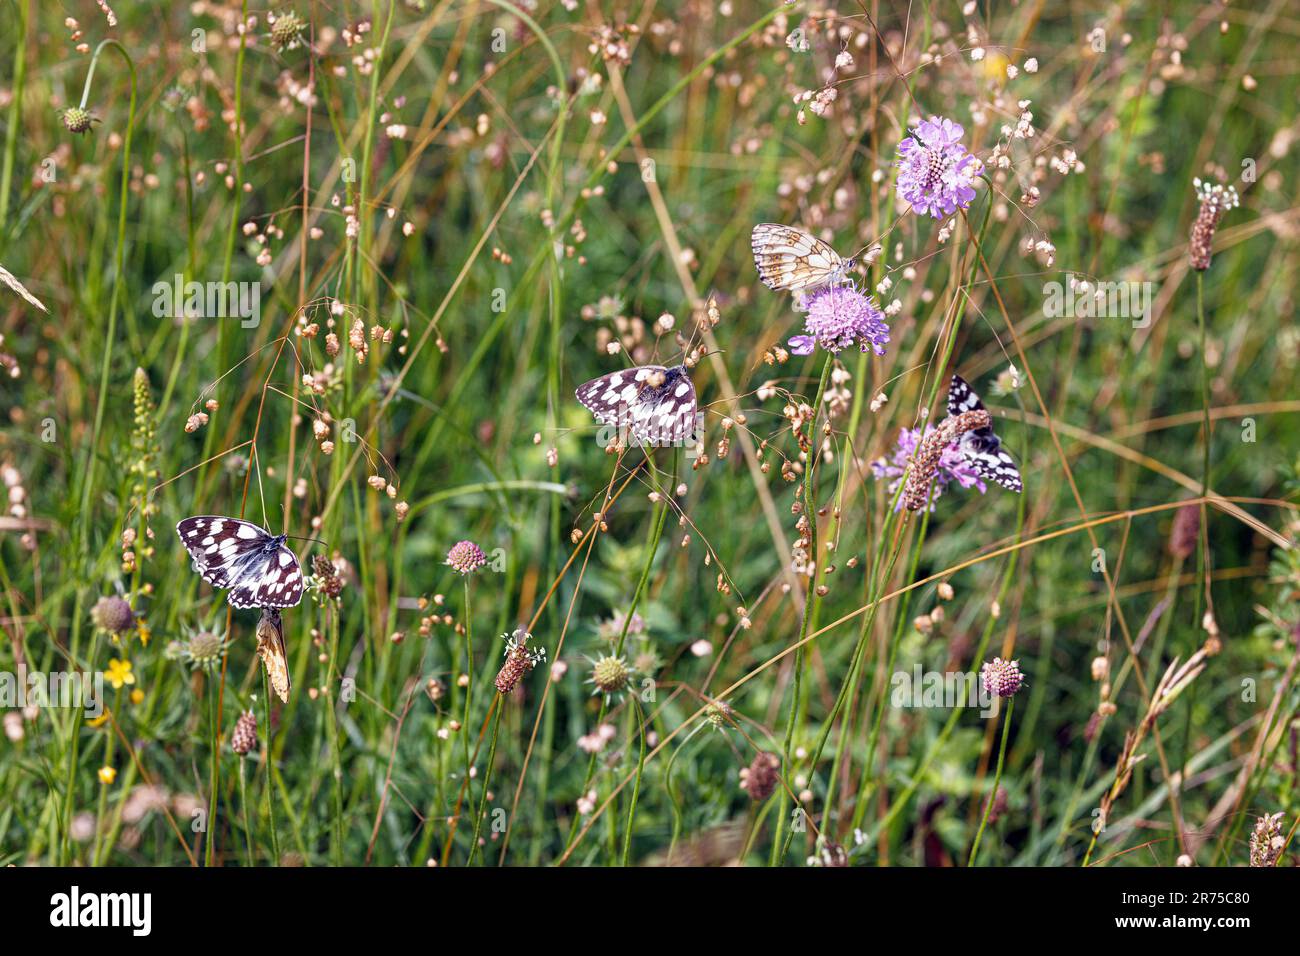 Blanc marbré (Melanargia galathea), plusieurs sur le champ de l'herbe scabieuse et cachetée, Allemagne, Bavière Banque D'Images